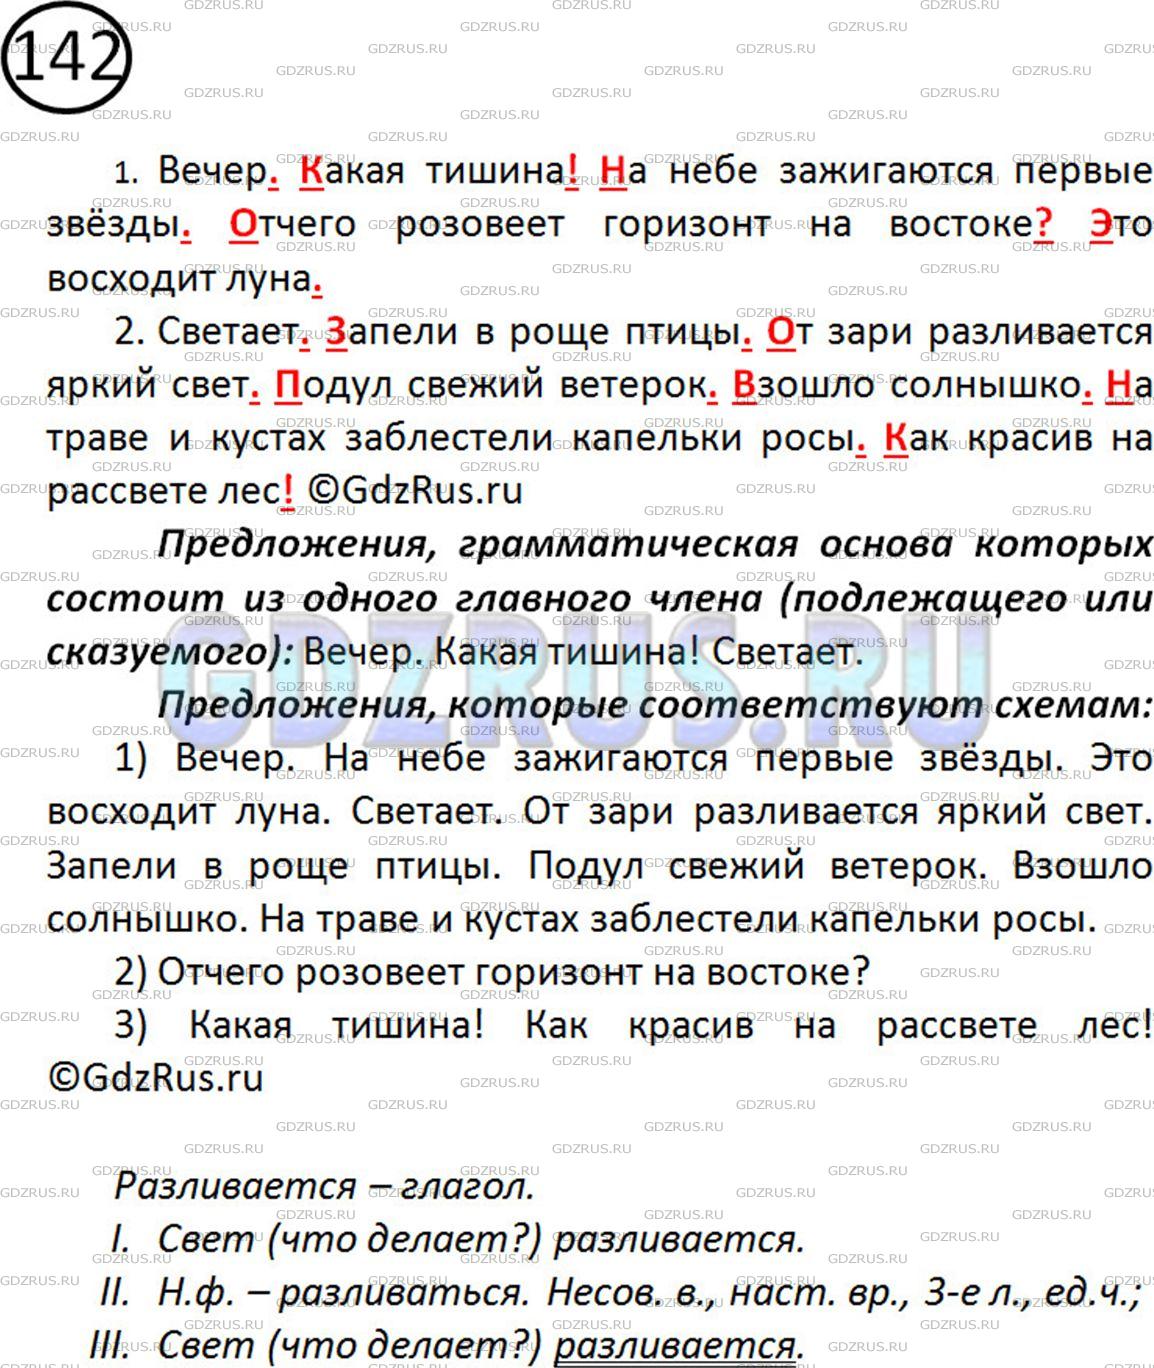 Фото решения 2: ГДЗ по Русскому языку 5 класса: Ладыженская Упр. 142